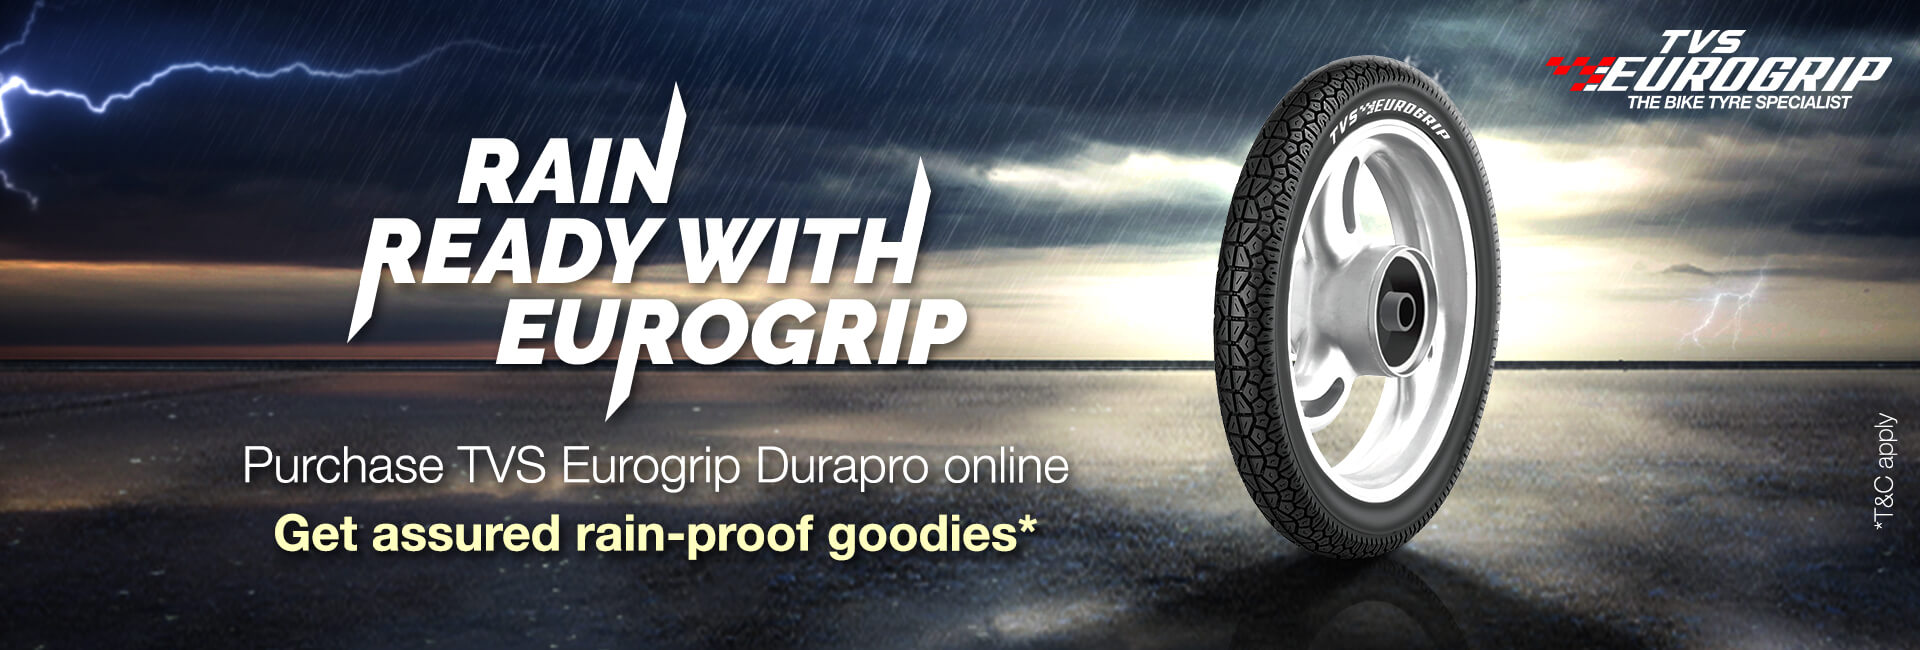 Two wheeler tyre page desktop banner of TVS Eurogrip